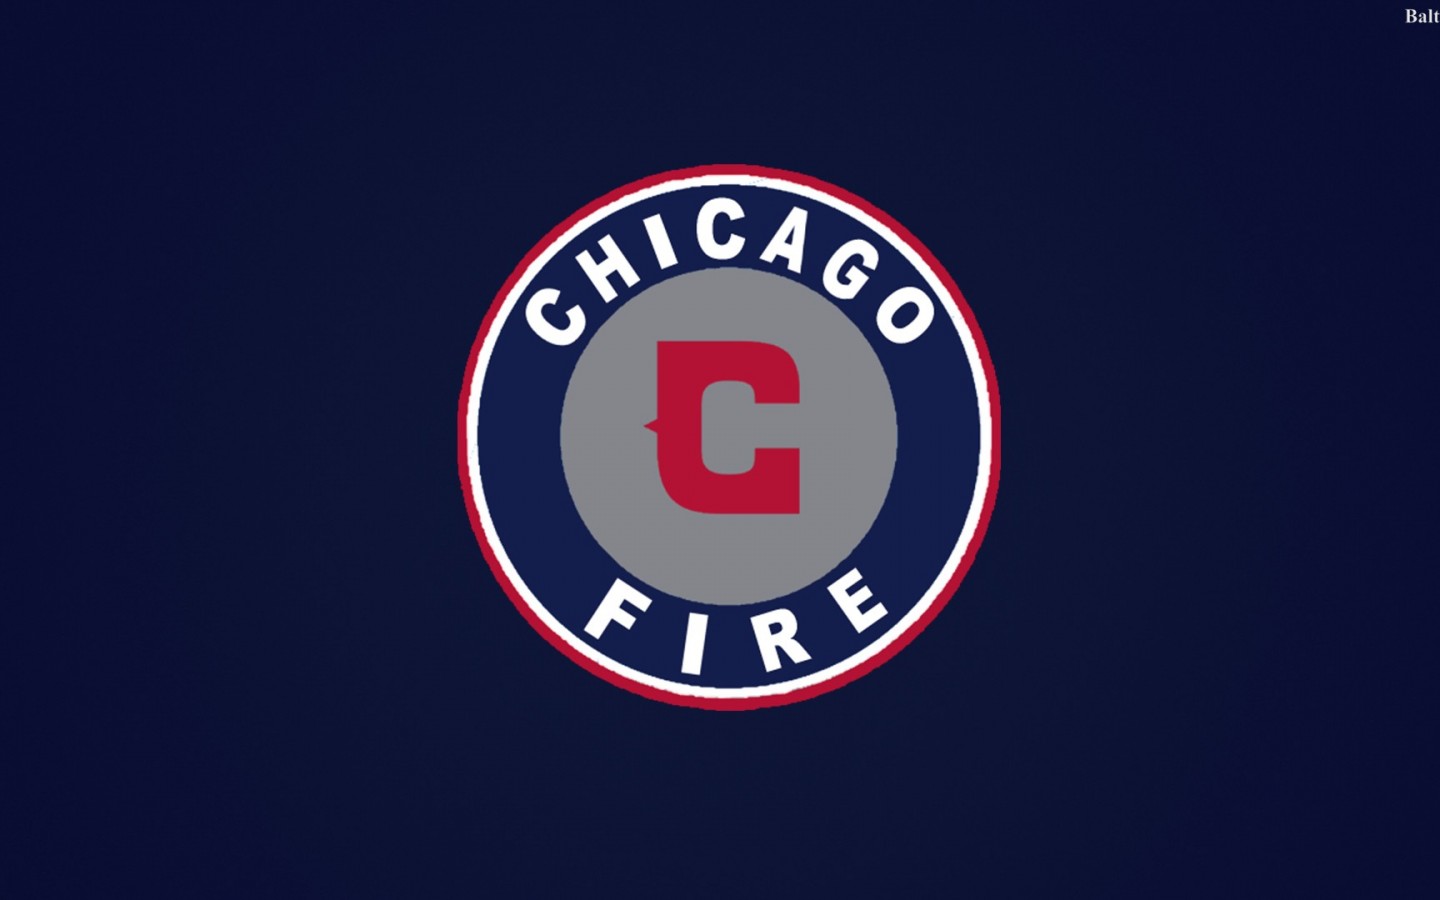 Chicago Fire Soccer Club Wallpaper Baltana